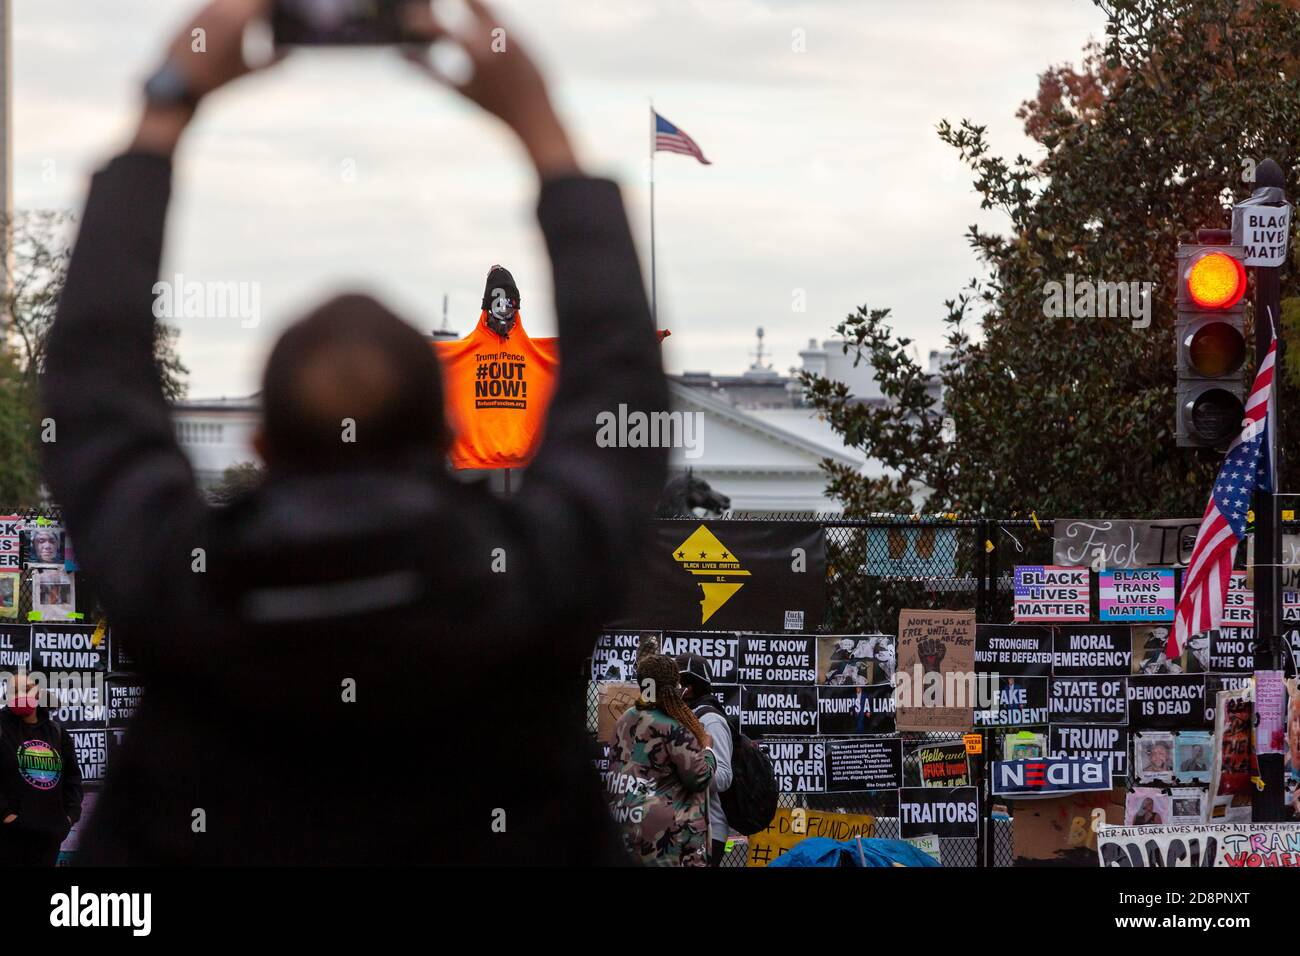 Washington, DC, EE.UU., 31 de octubre de 2020. Foto: Visitante de Black Lives Matter Plaza tomando una foto de una figura en un palo por encima de la valla de Lafayette Square en la Casa Blanca. La figura lleva la sudadera de color naranja del fascismo de la basura, y lleva el nombre de su iniciativa: ¡Trump/Pence Out Now! También lleva un sombrero Black Lives Matter. La Casa Blanca es visible detrás de la figura. Fotografiado durante una marcha llevada a cabo por Prefise Fascism DC para protestar contra las políticas fascistas y los abusos de la administración Trump. Crédito: Allison C Bailey/Alamy Live News Foto de stock